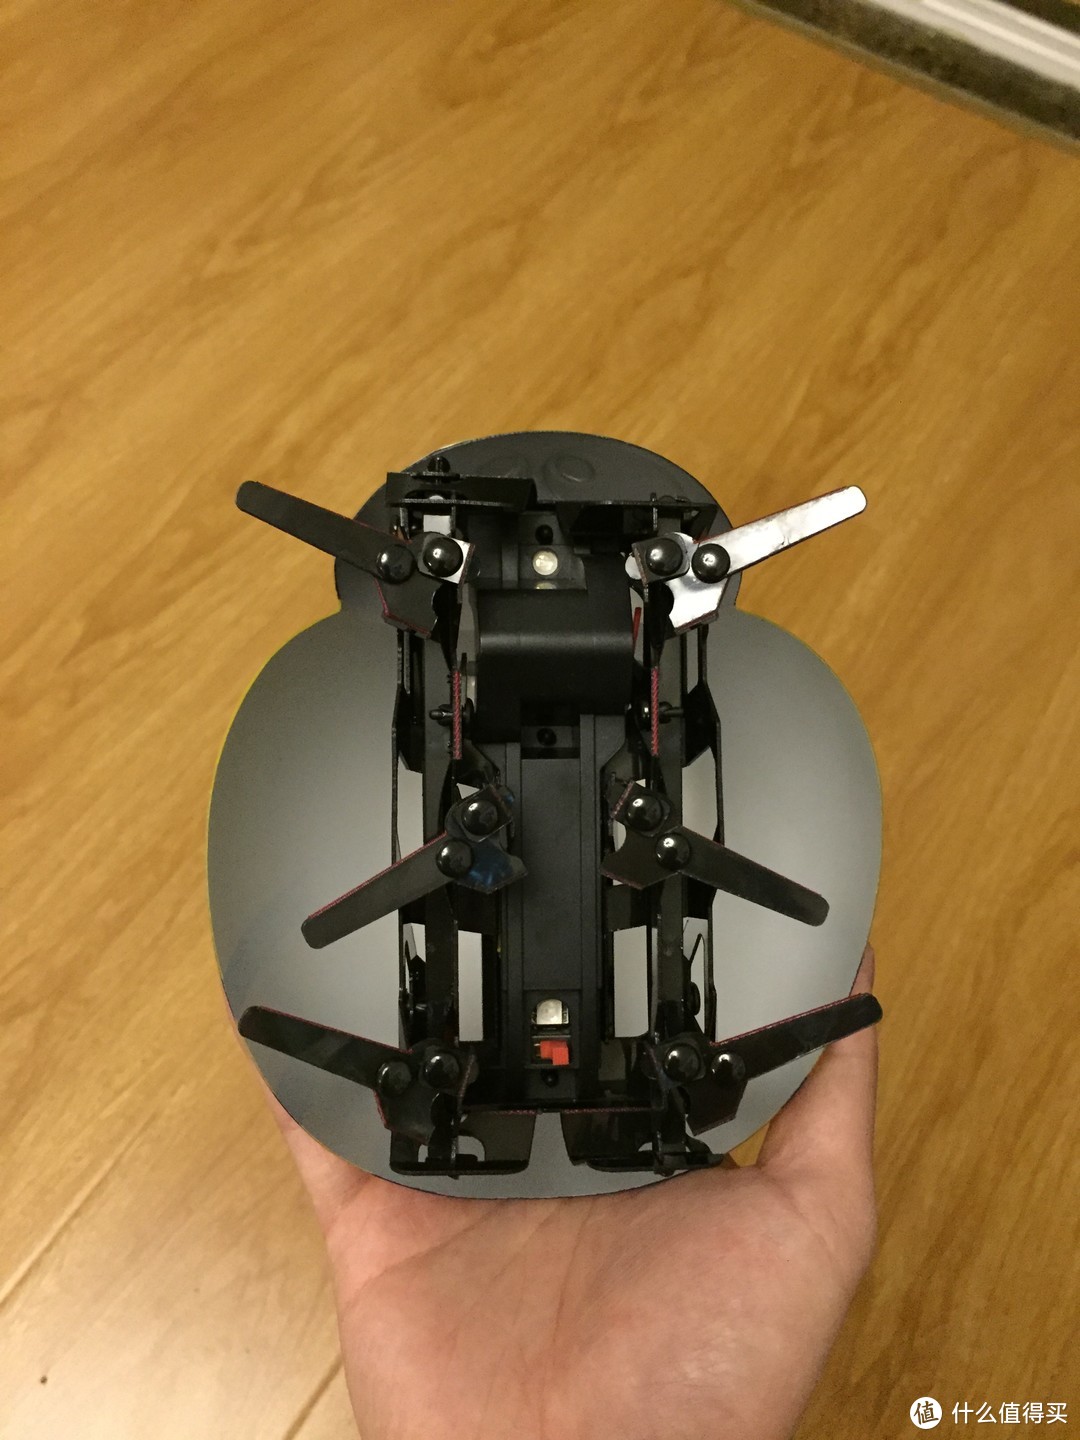 【轻众测】我家男宝的圣诞礼物——DFRobot逗逗虫机器人测评